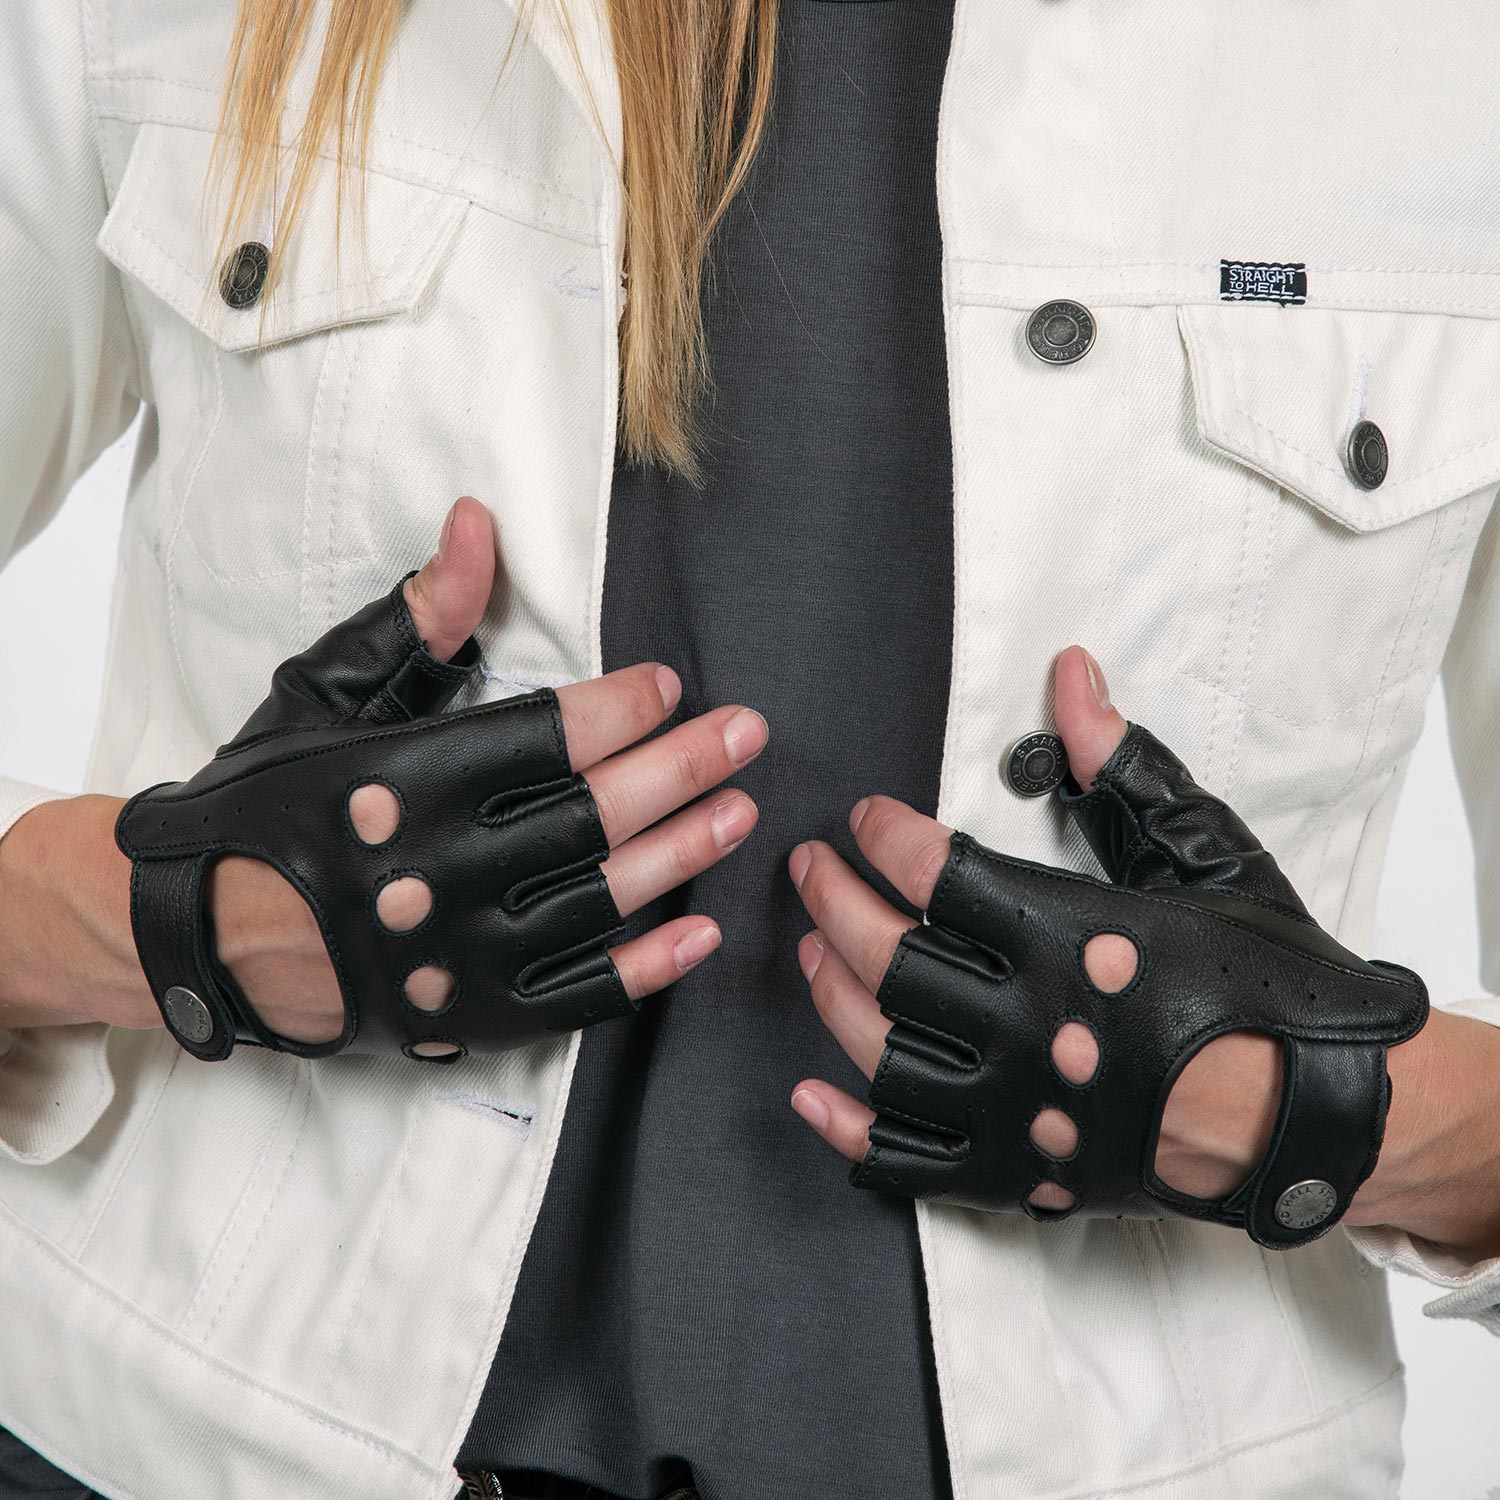 Driving Gloves: Fingerless Mitts Black Leather Gloves!